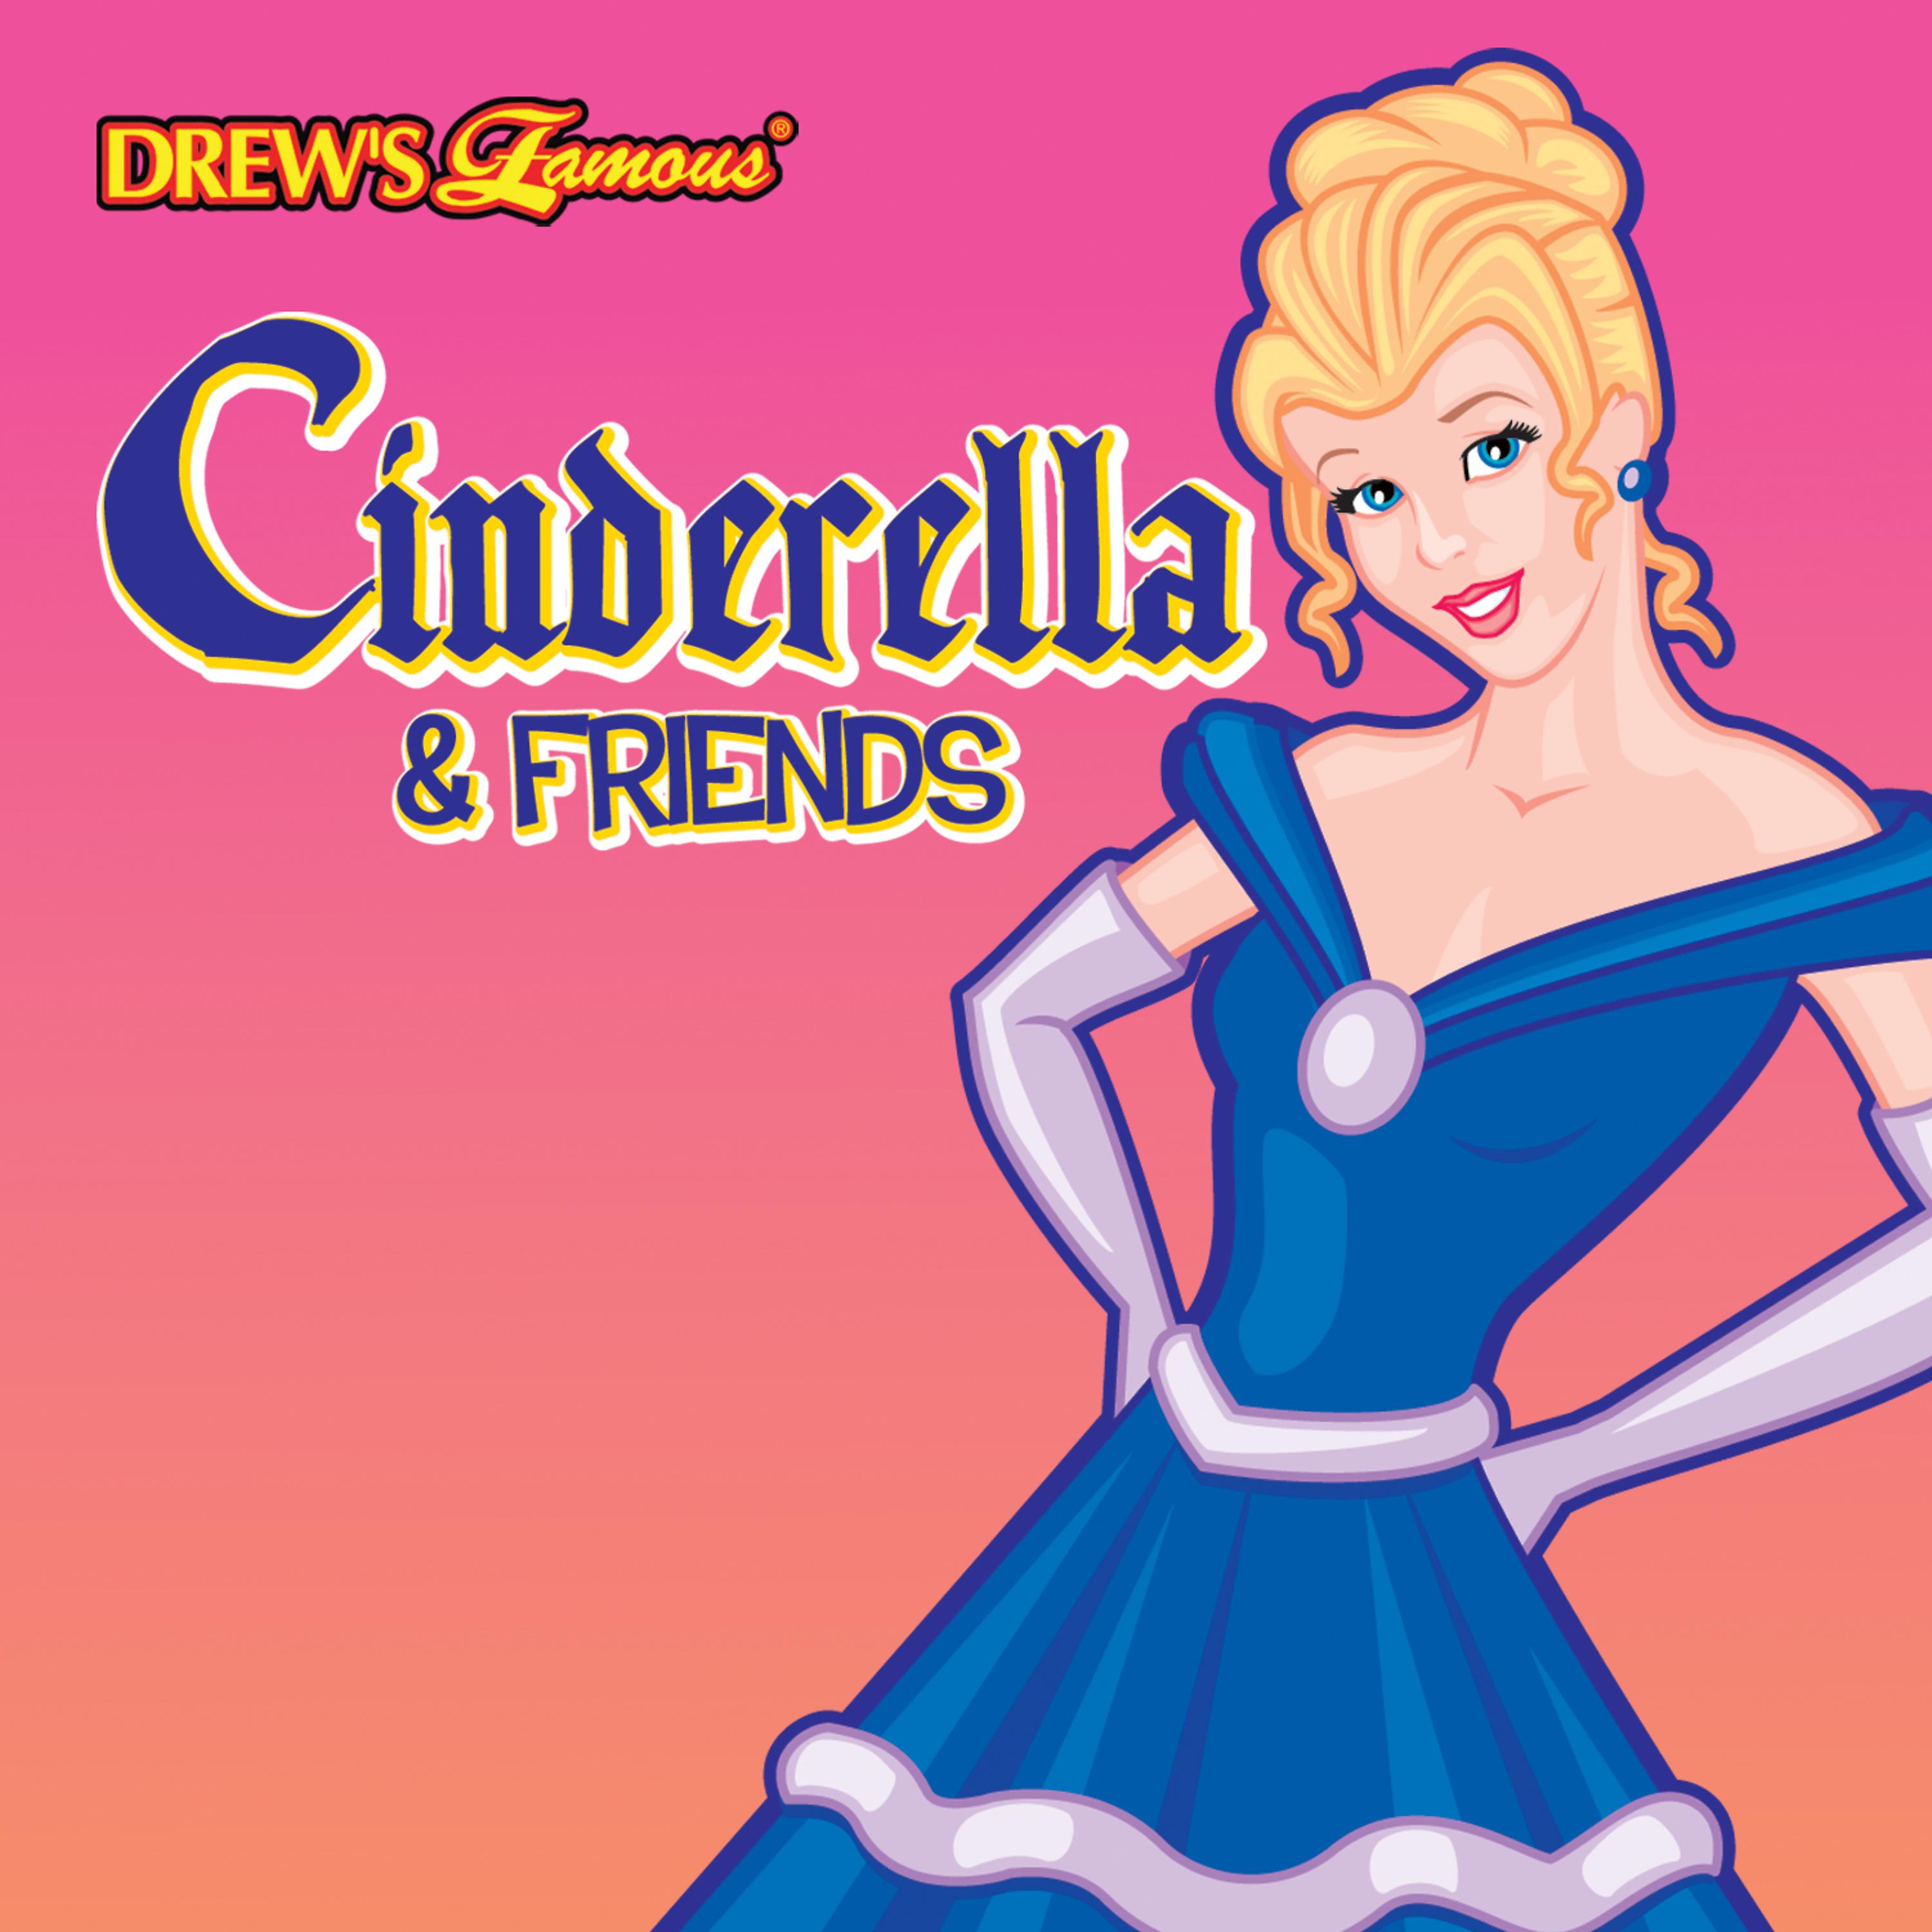 Золушка песни. Золушка и певец. Cinderella альбомы. Cinderella's friends.